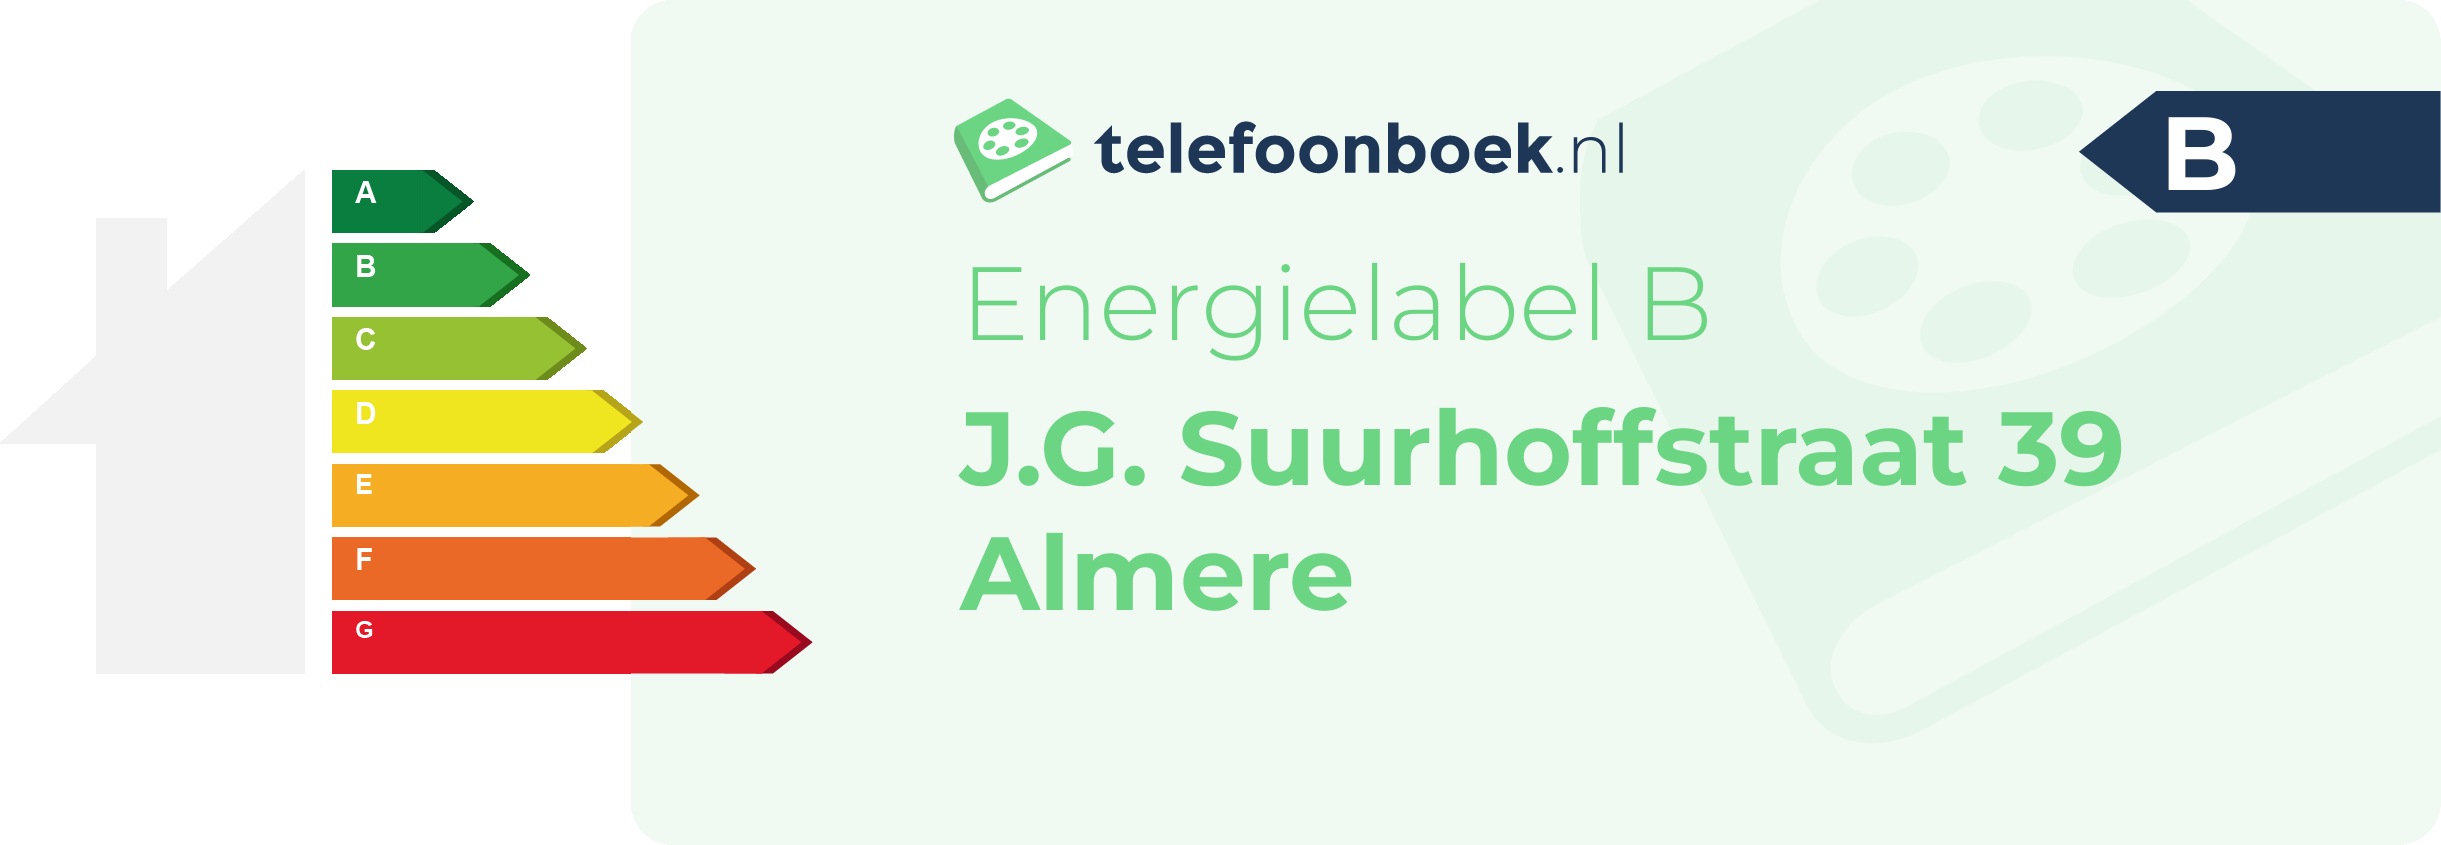 Energielabel J.G. Suurhoffstraat 39 Almere